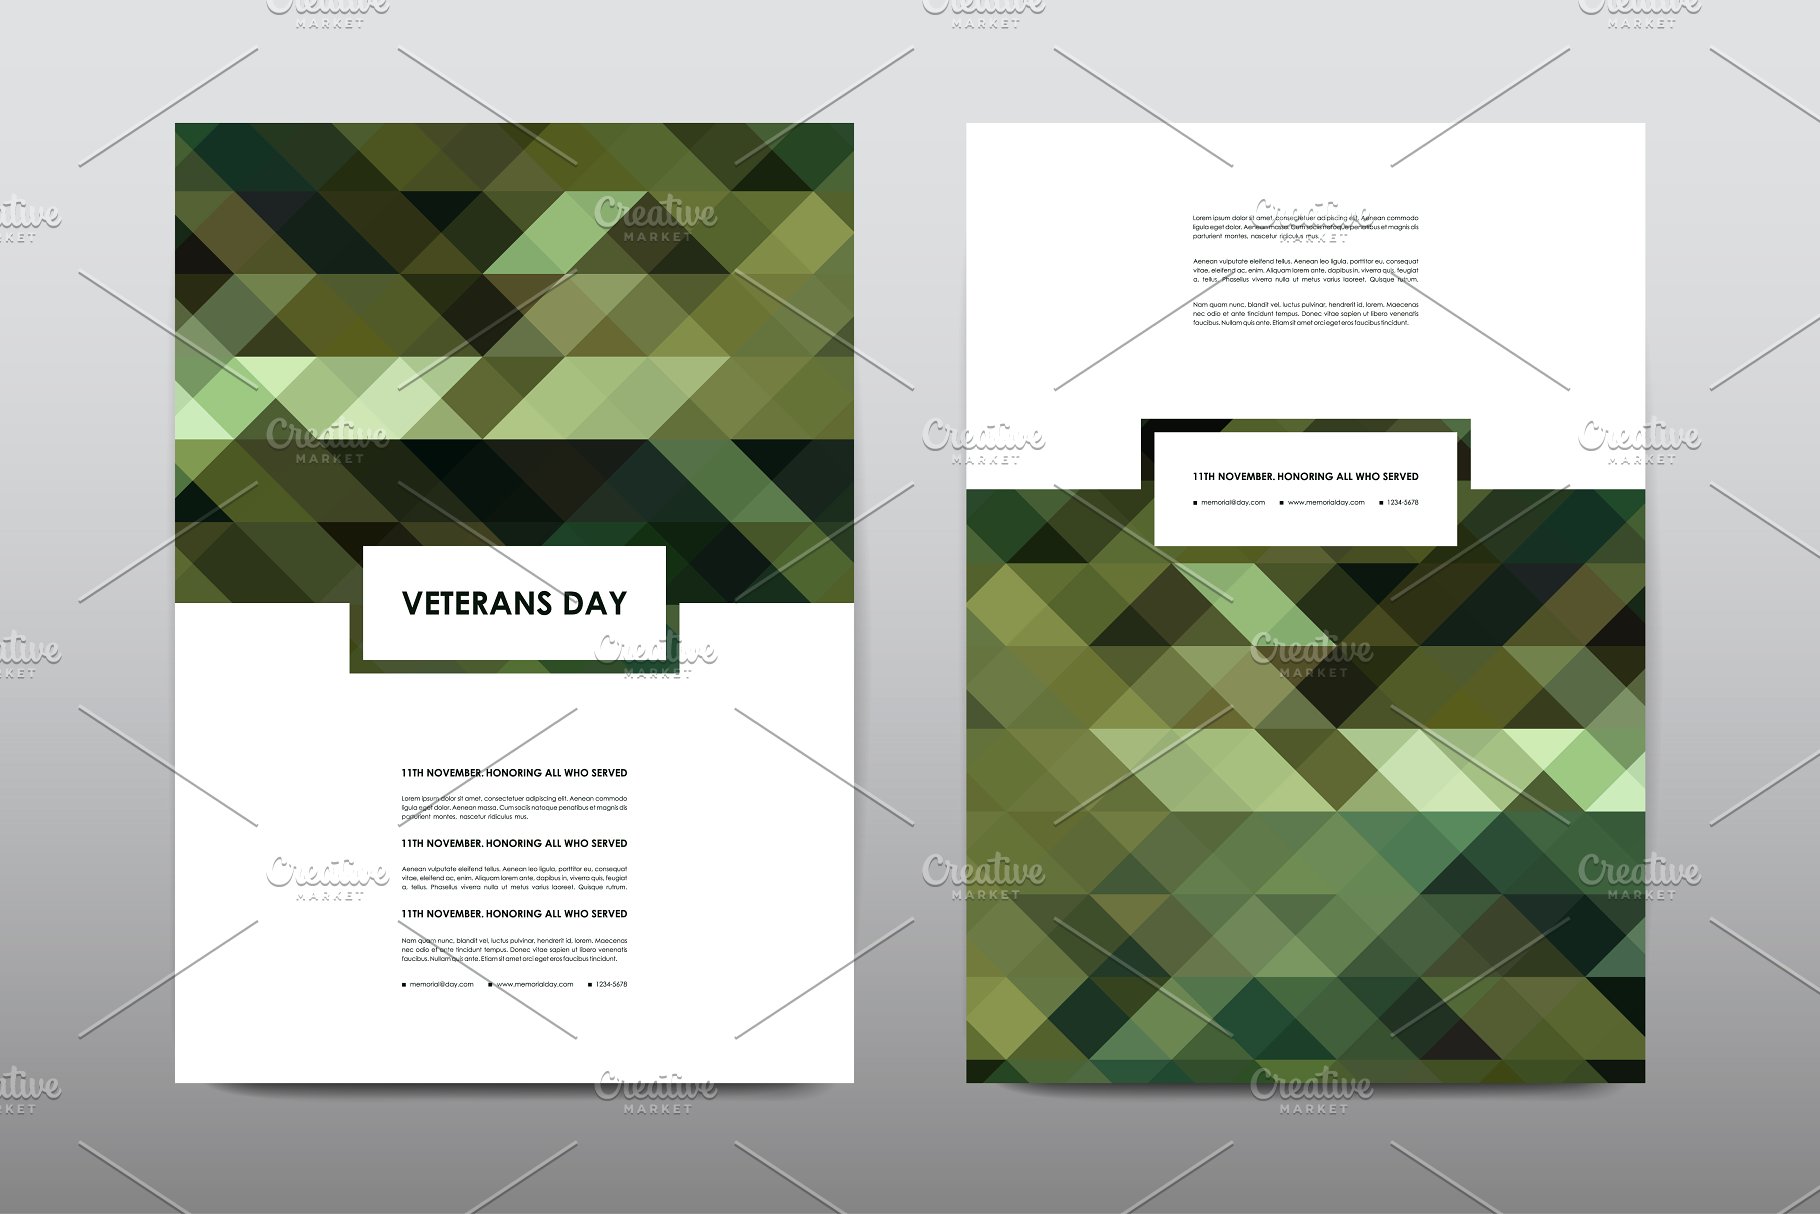 40+老兵节军人宣传小册模板 Veteran’s Day Brochures Bundle插图(15)